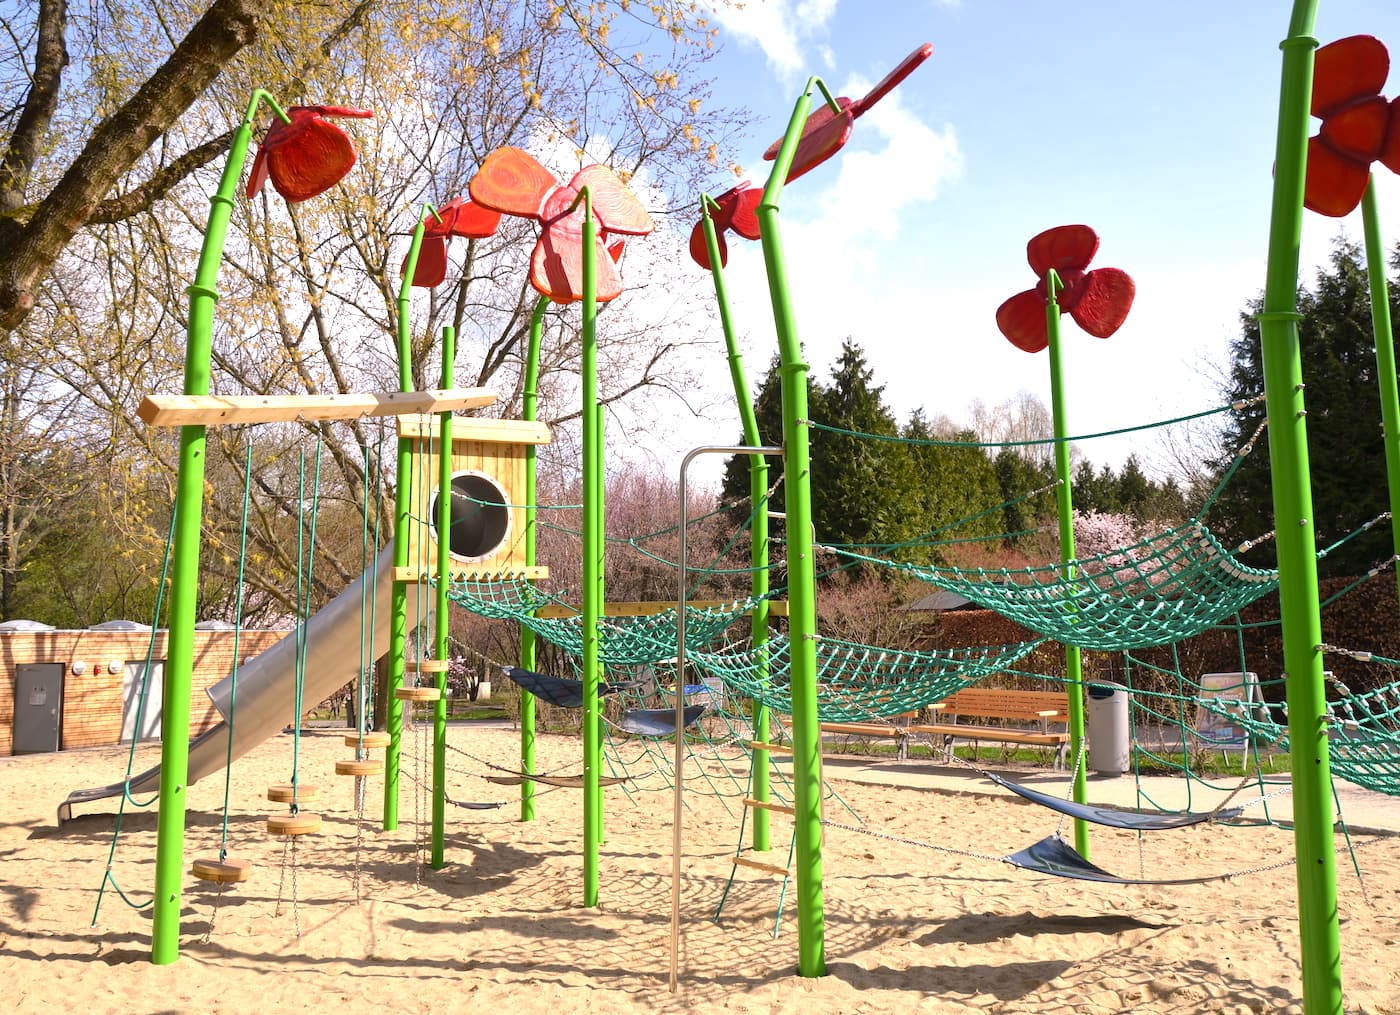 Neuer Spielplatz In Den Gärten Der Welt Für Familien Mit Kindern In Berlin // Himbeer